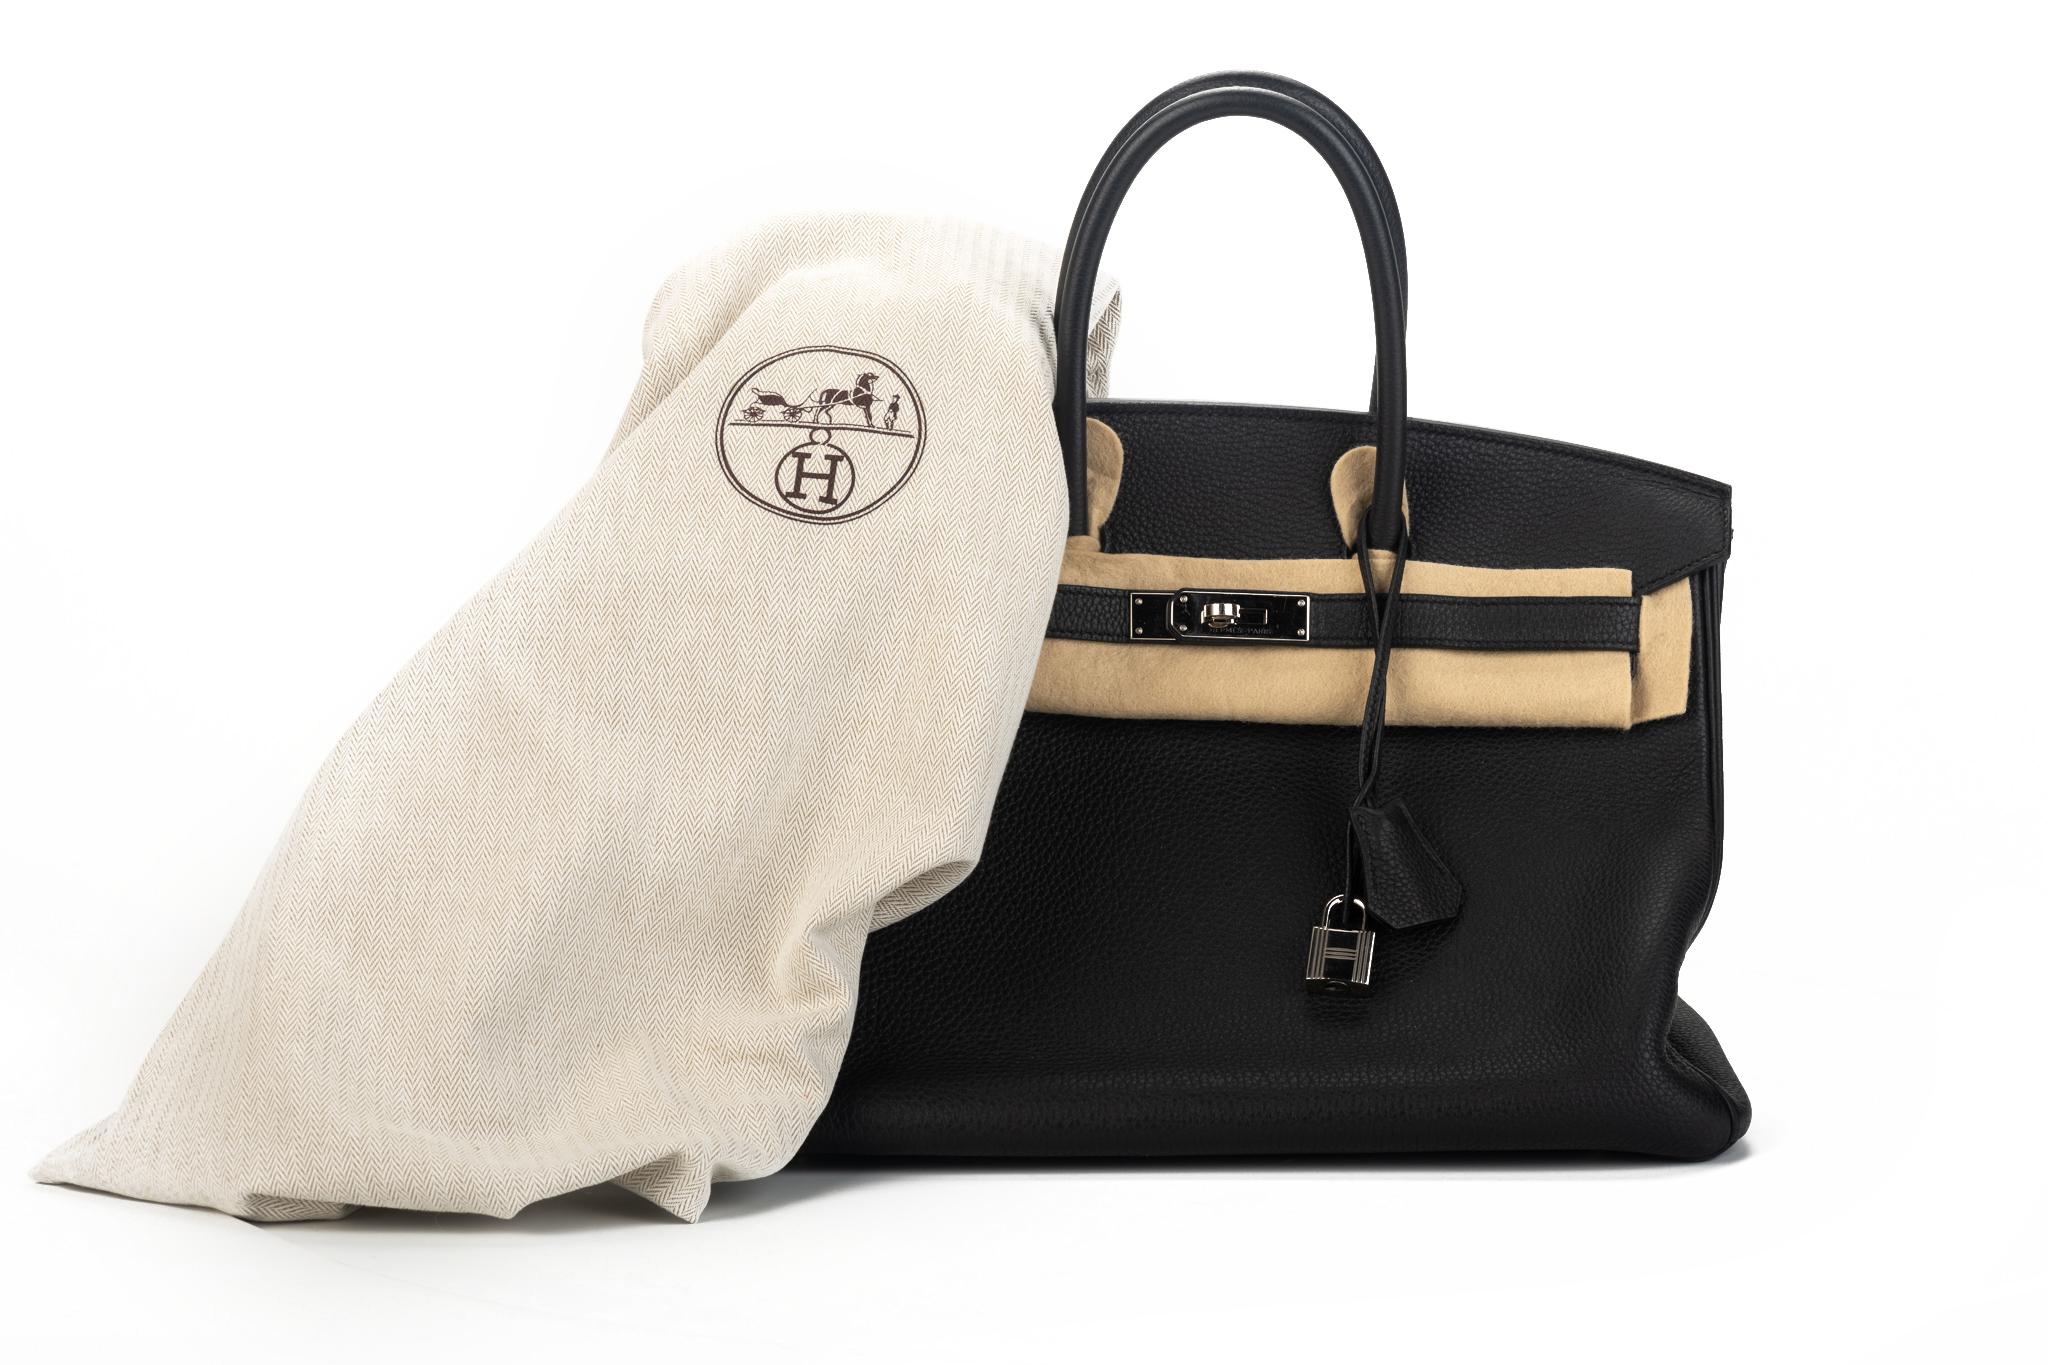 Hermès Birkin bag 35 cm black togo with palladium hardware. Blind stamp 